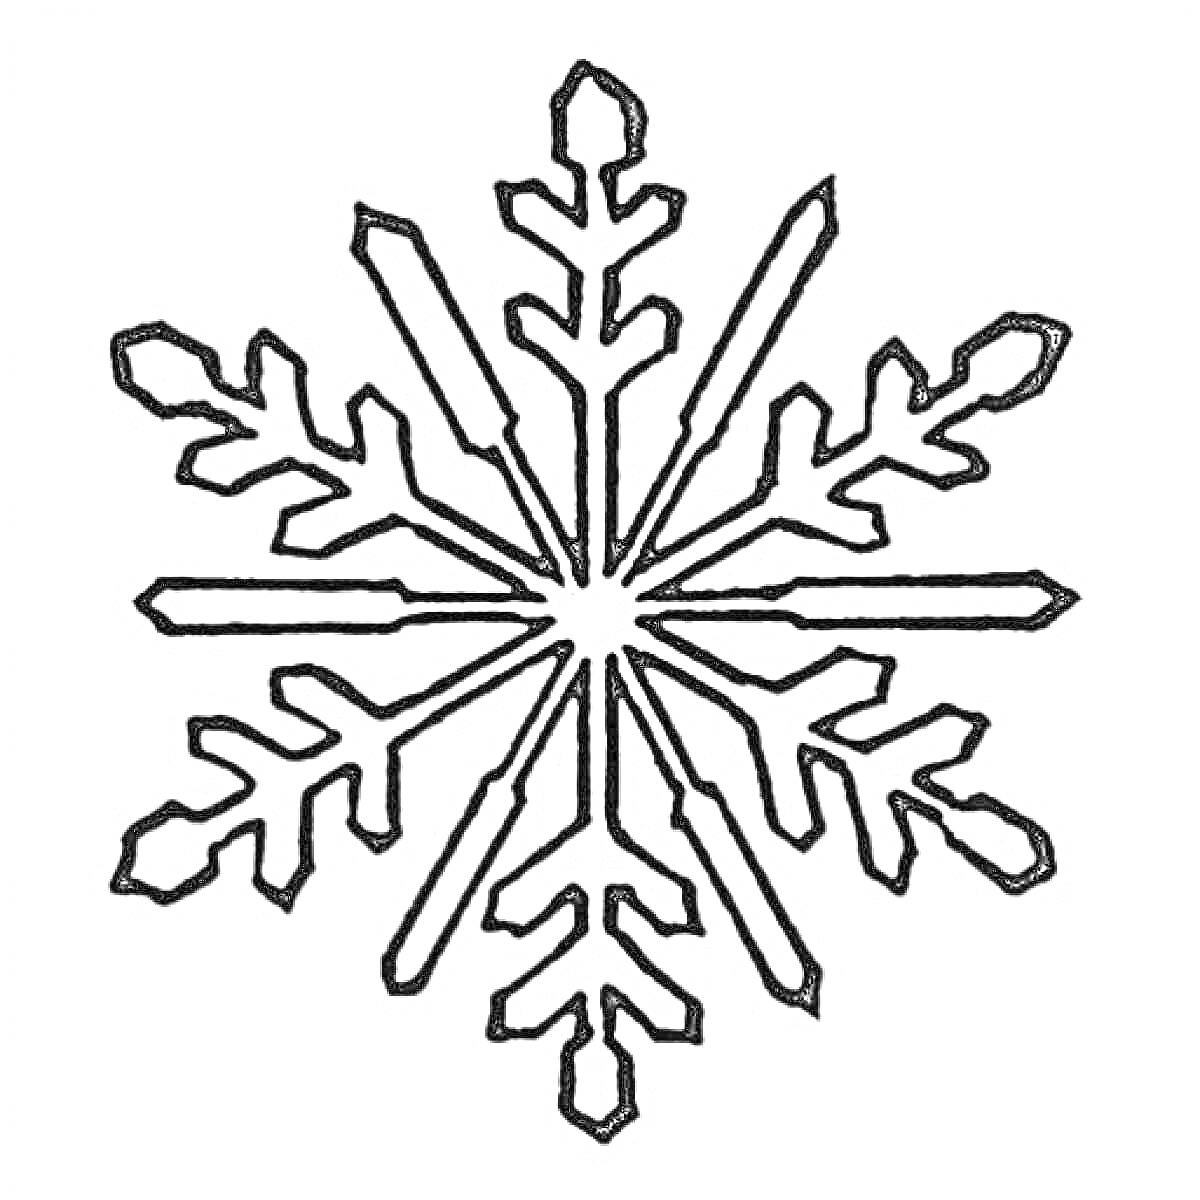 Раскраска Снежинка с шестью лучами и узорчатыми концами